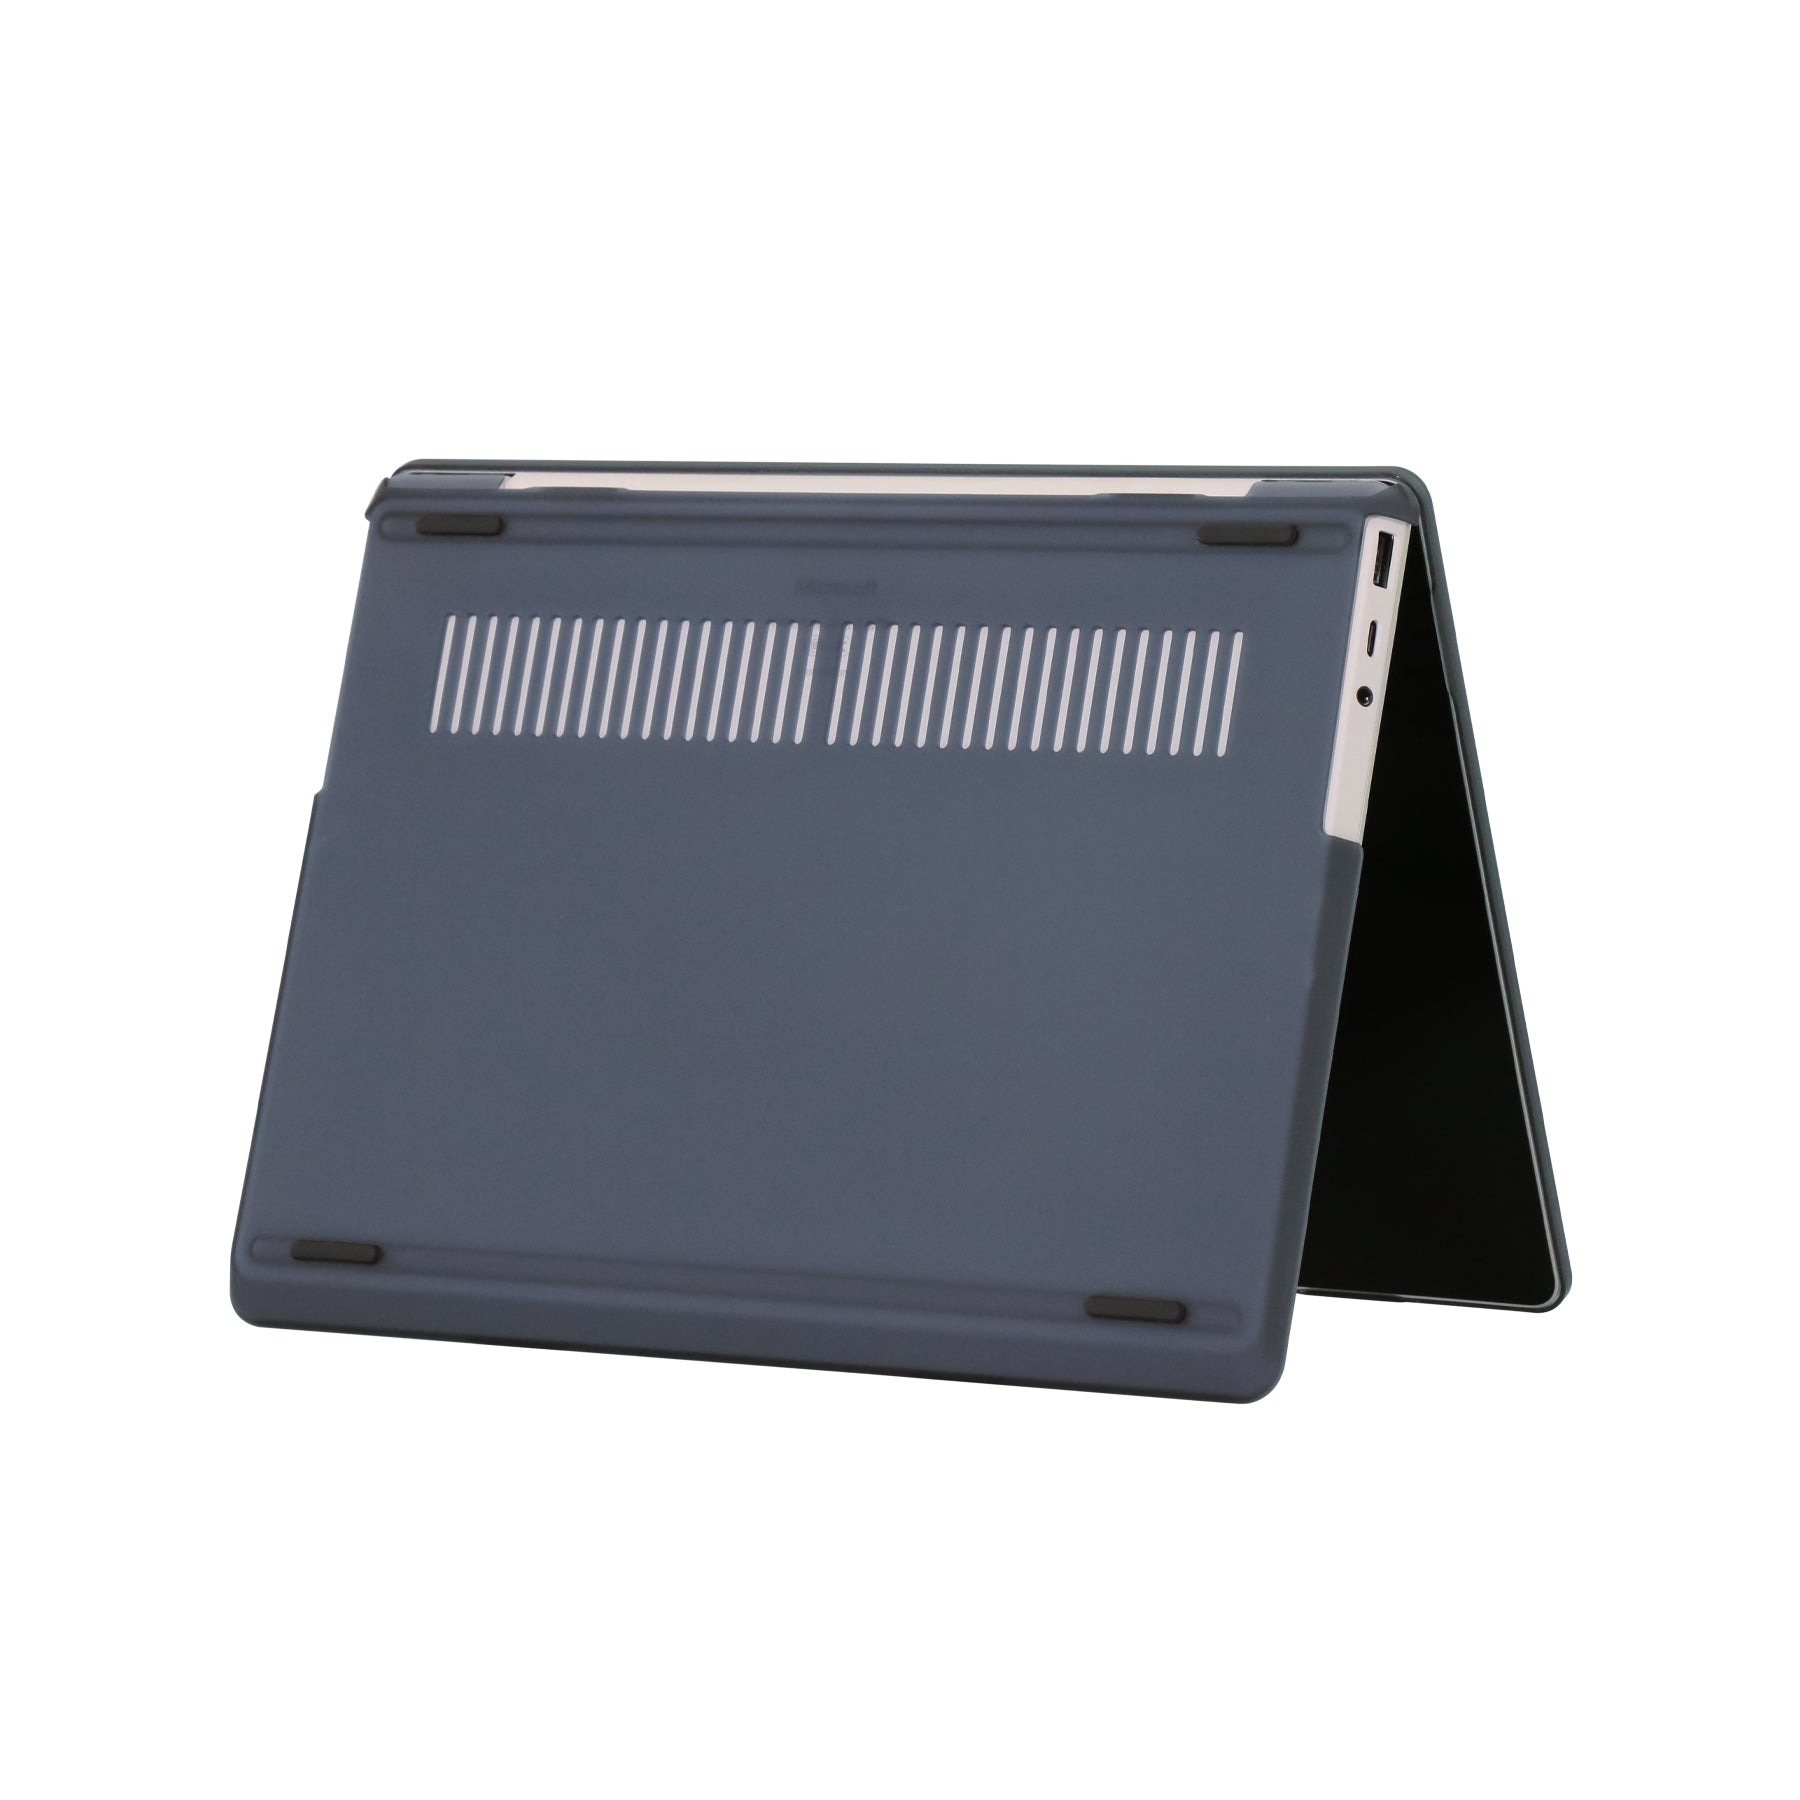 Matte Transparent Black Microsoft Surface Laptop Case